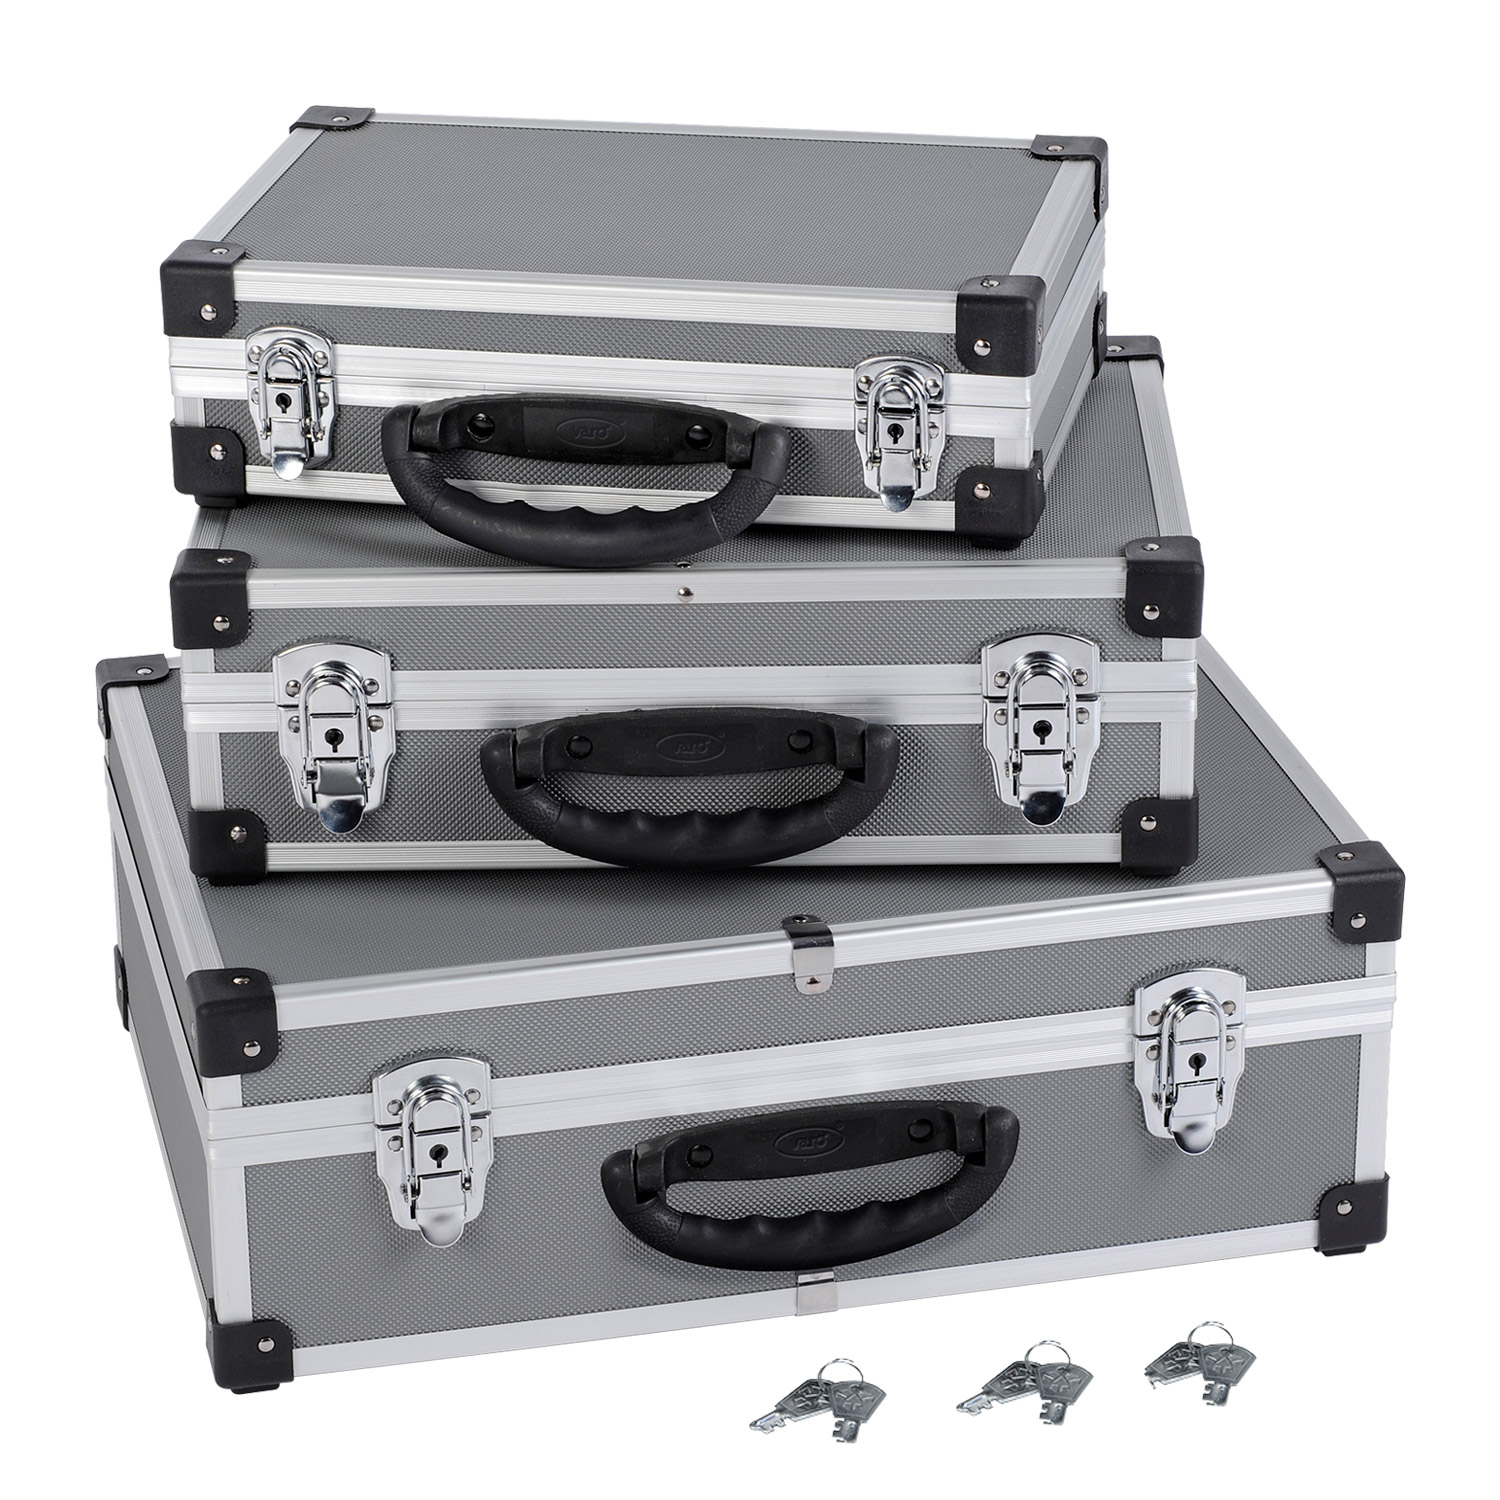 Alukoffer Aluminium-Koffer 3-in-1 Allround Werkzeugkoffer-Set stapelbar von VARO